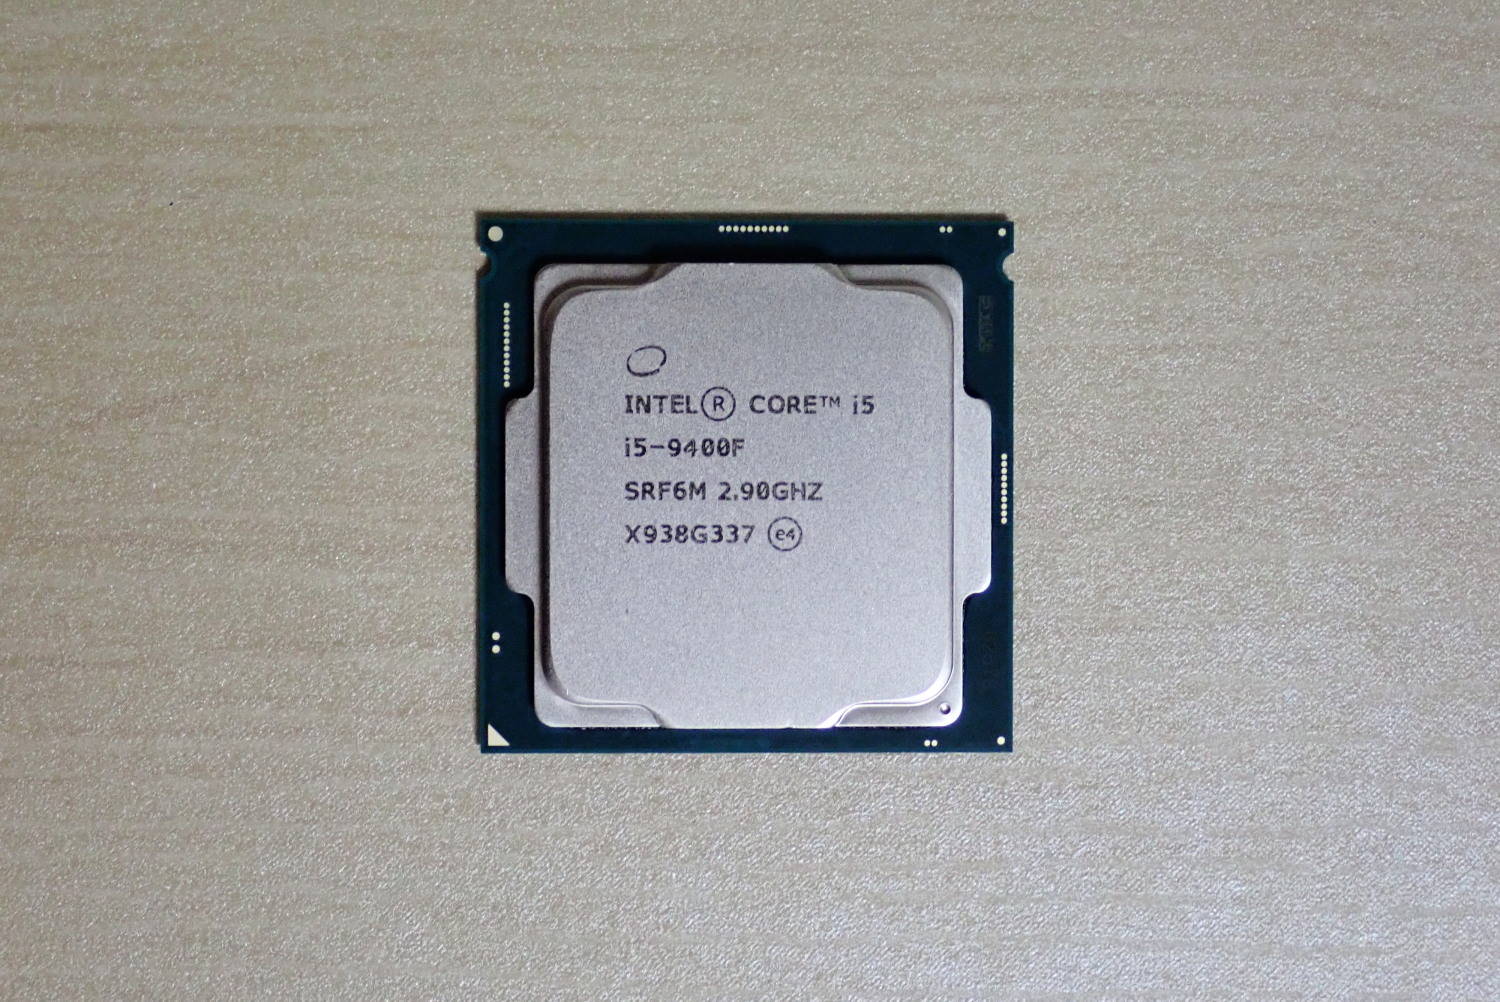 Intel Core i5-9400F レビュー】コスパ最強CPUのスペックと 